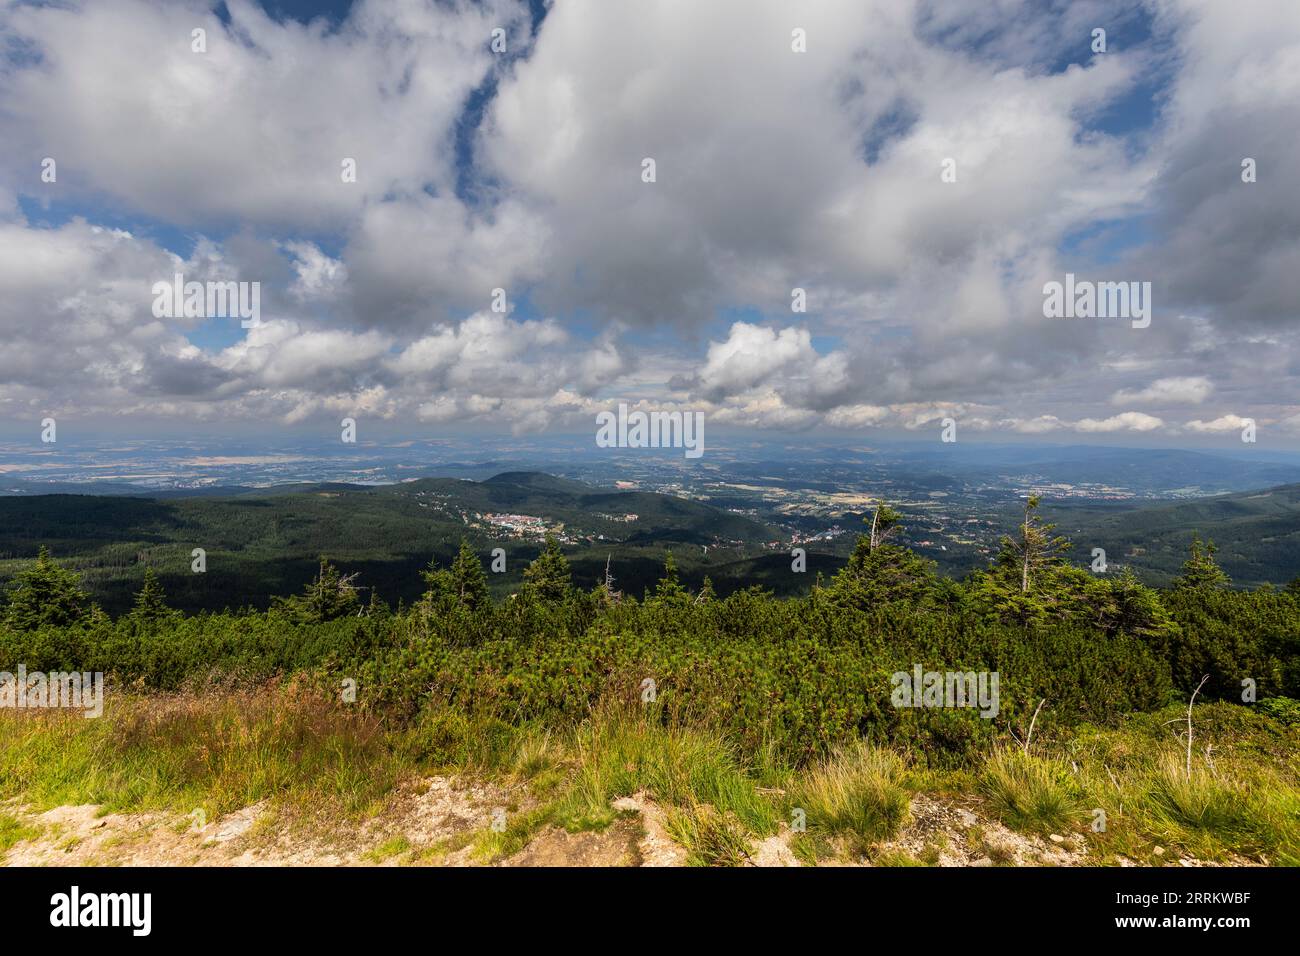 Europe, Poland, Lower Silesia, Giant Mountains, mountain trail near Sniezka Stock Photo